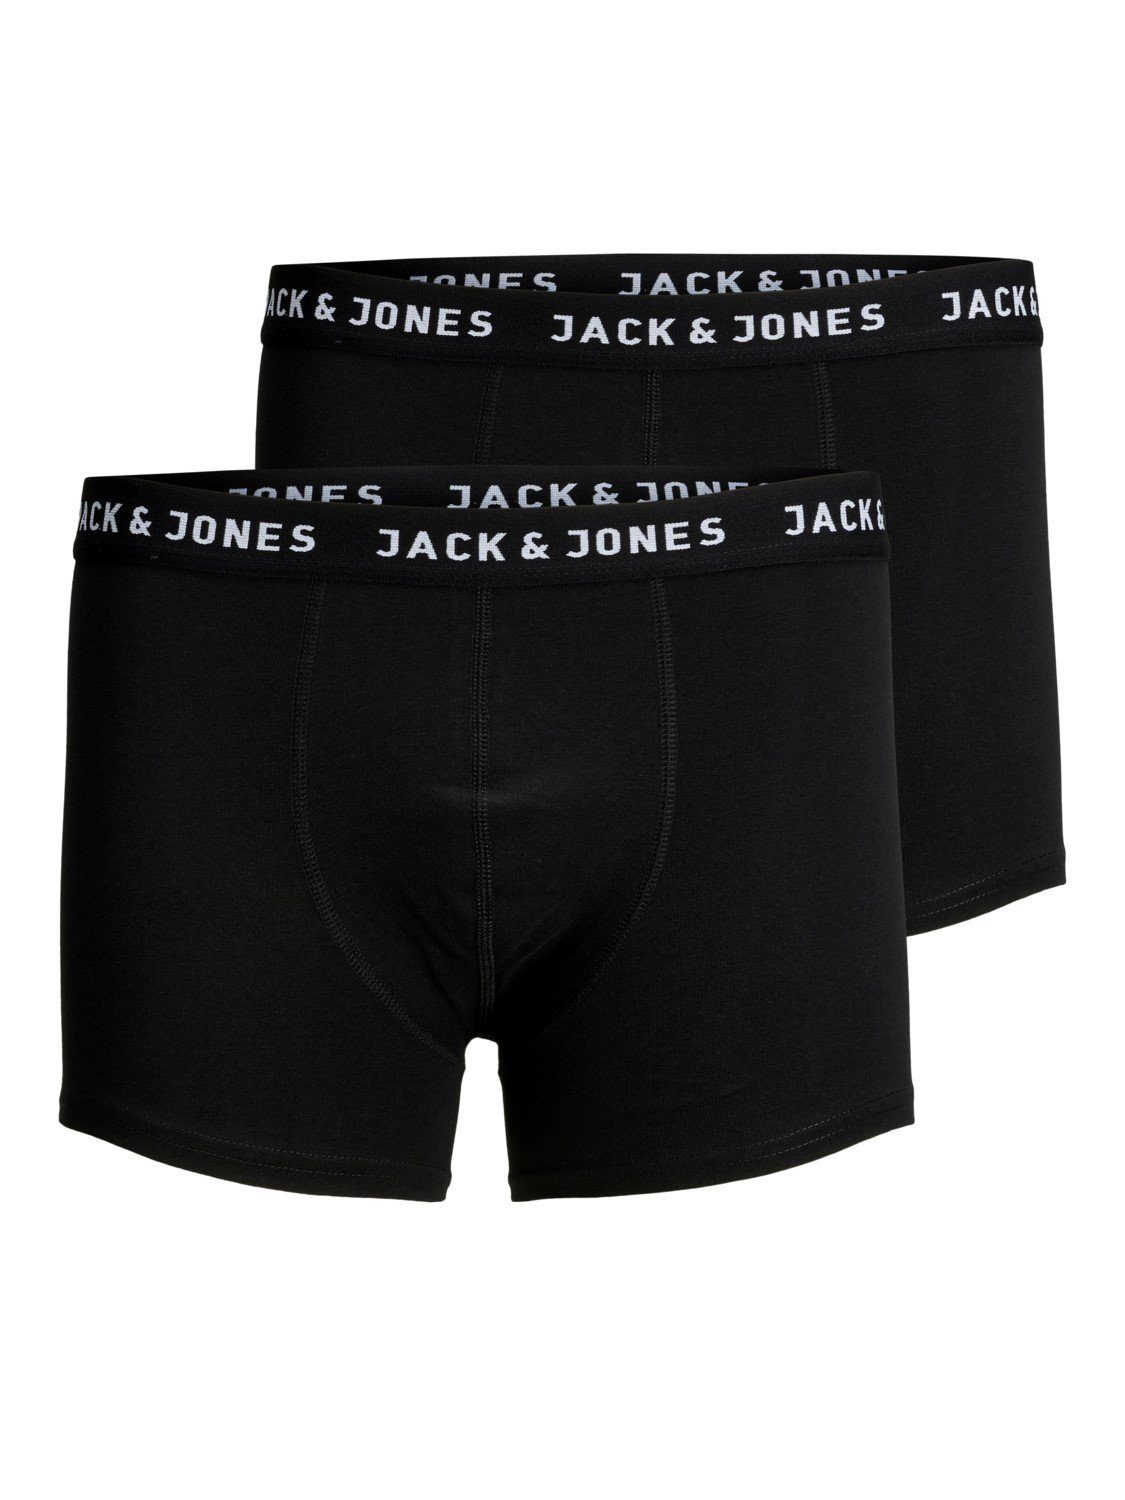 Jack And Jones Boxershorts Jon 2 Stück Im 2er Pack Online Kaufen Otto 